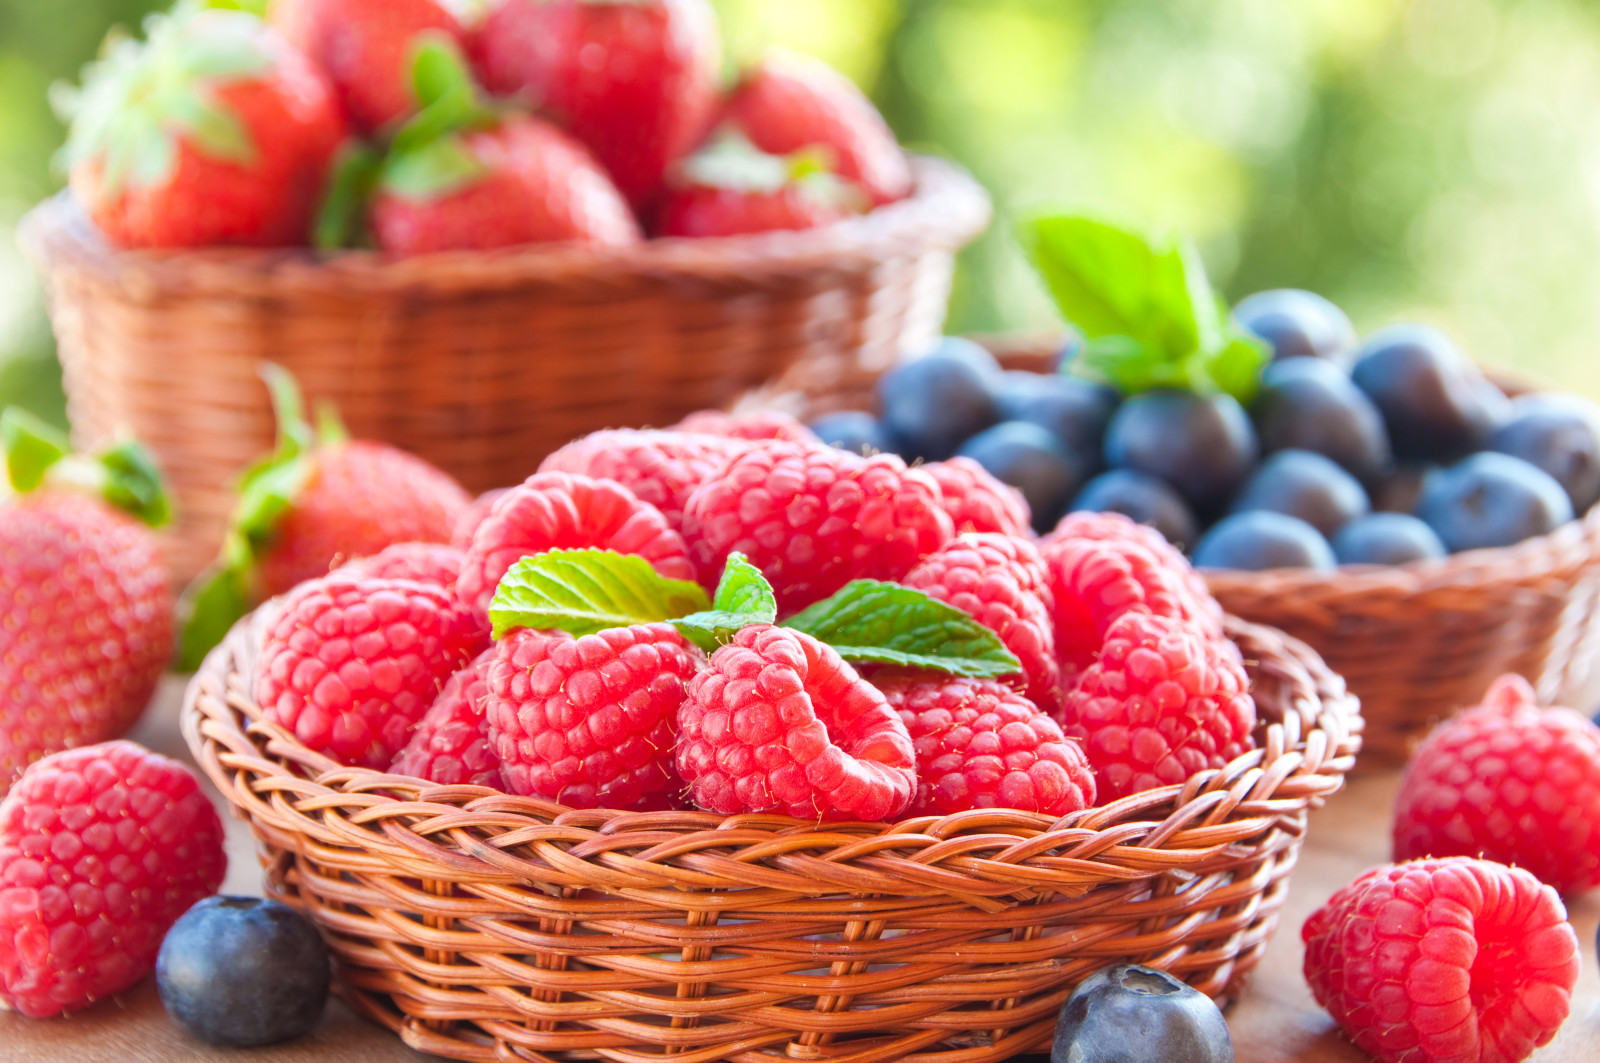 浆果, 覆盆子, 新鲜, 蓝莓, 草莓, 篮